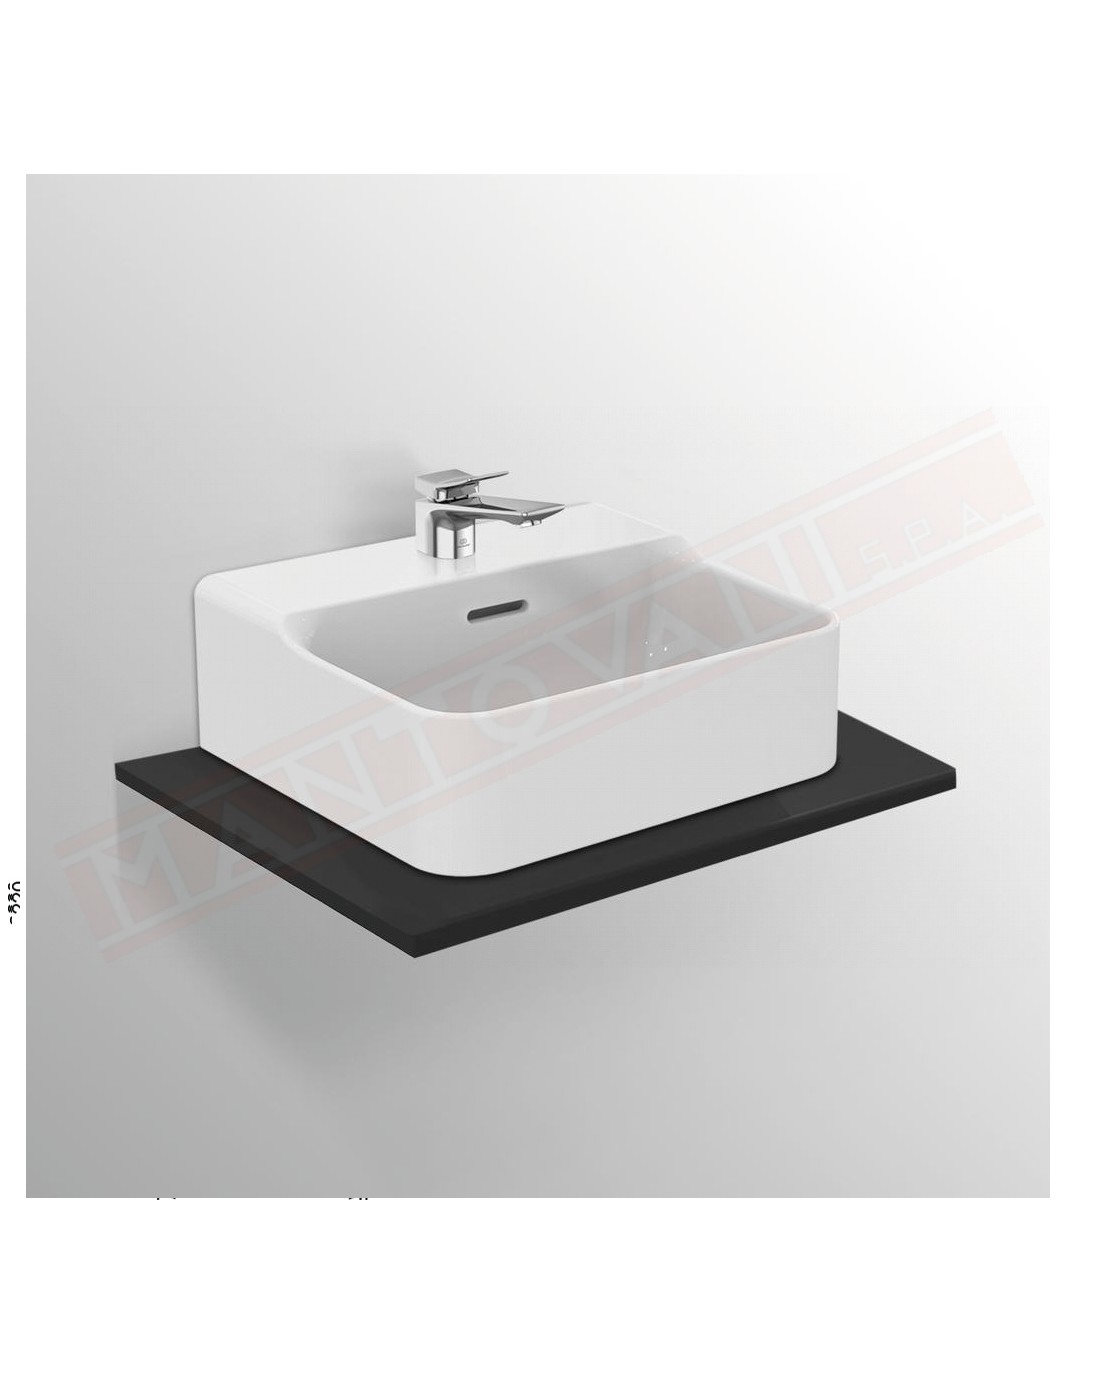 Ideal Standard Conca lavabo bagno da appoggio 40x35 cm con troppopieno e un fori rubinetto lato inferiore rettificato